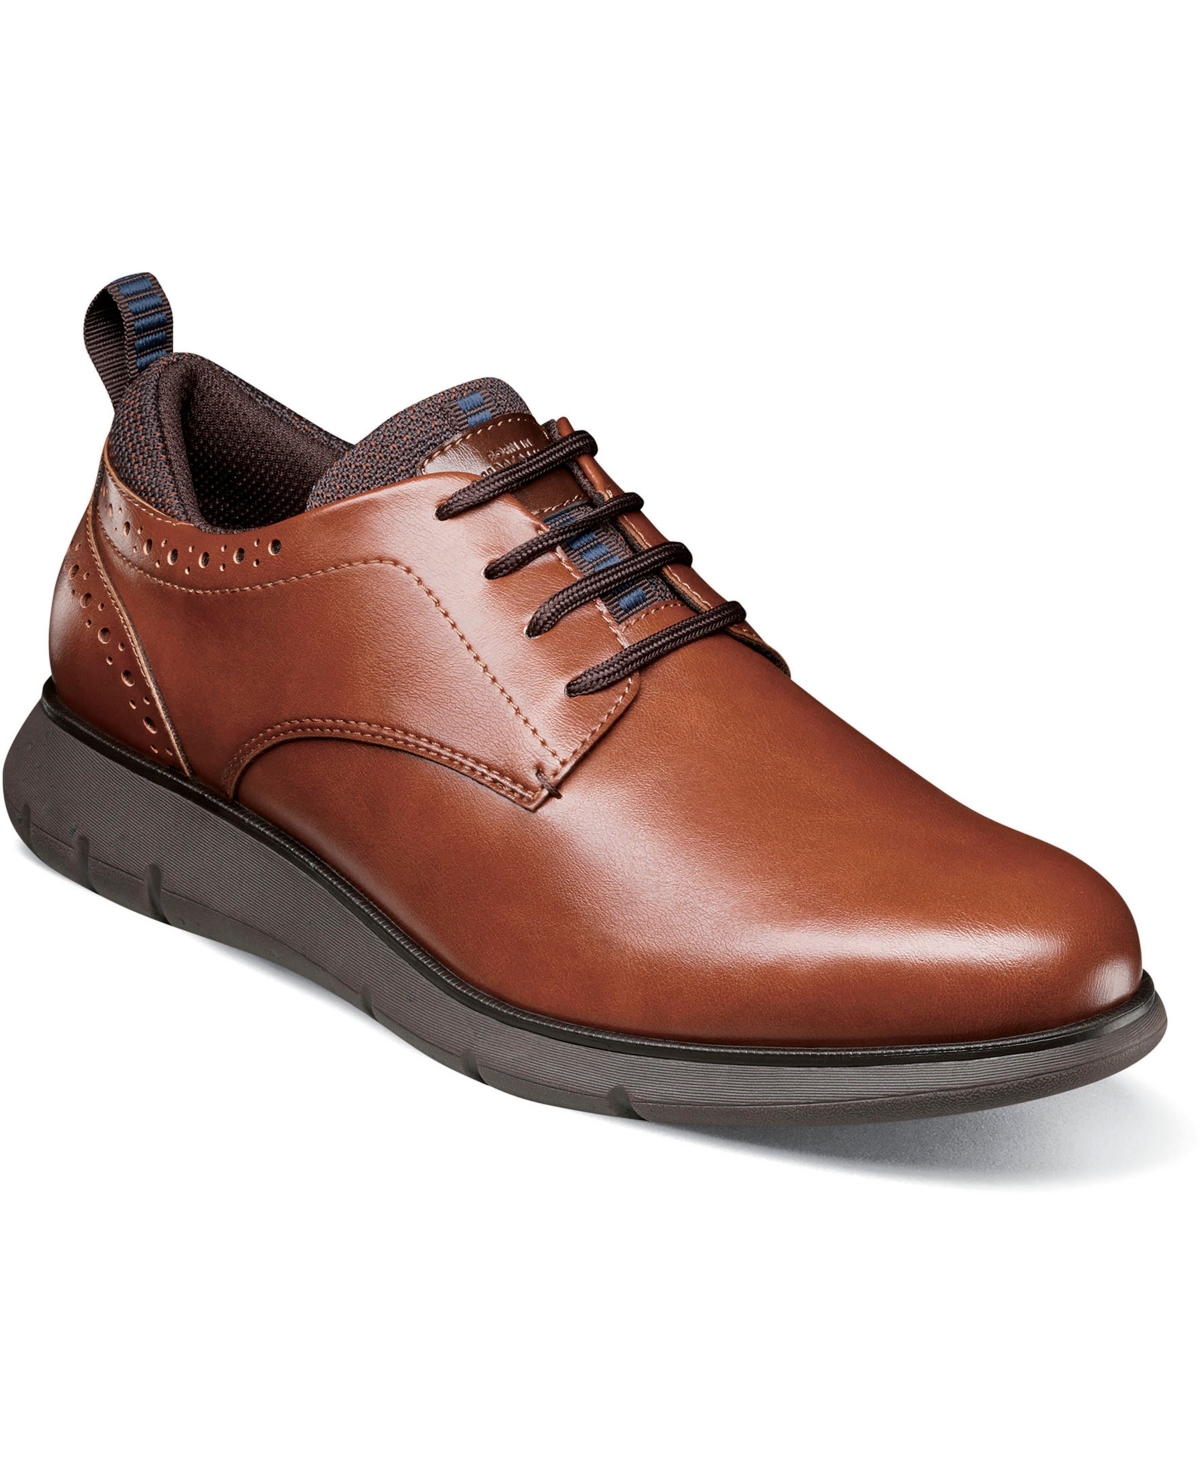 Men's Stance Plain Toe Oxford Shoes - Cognac